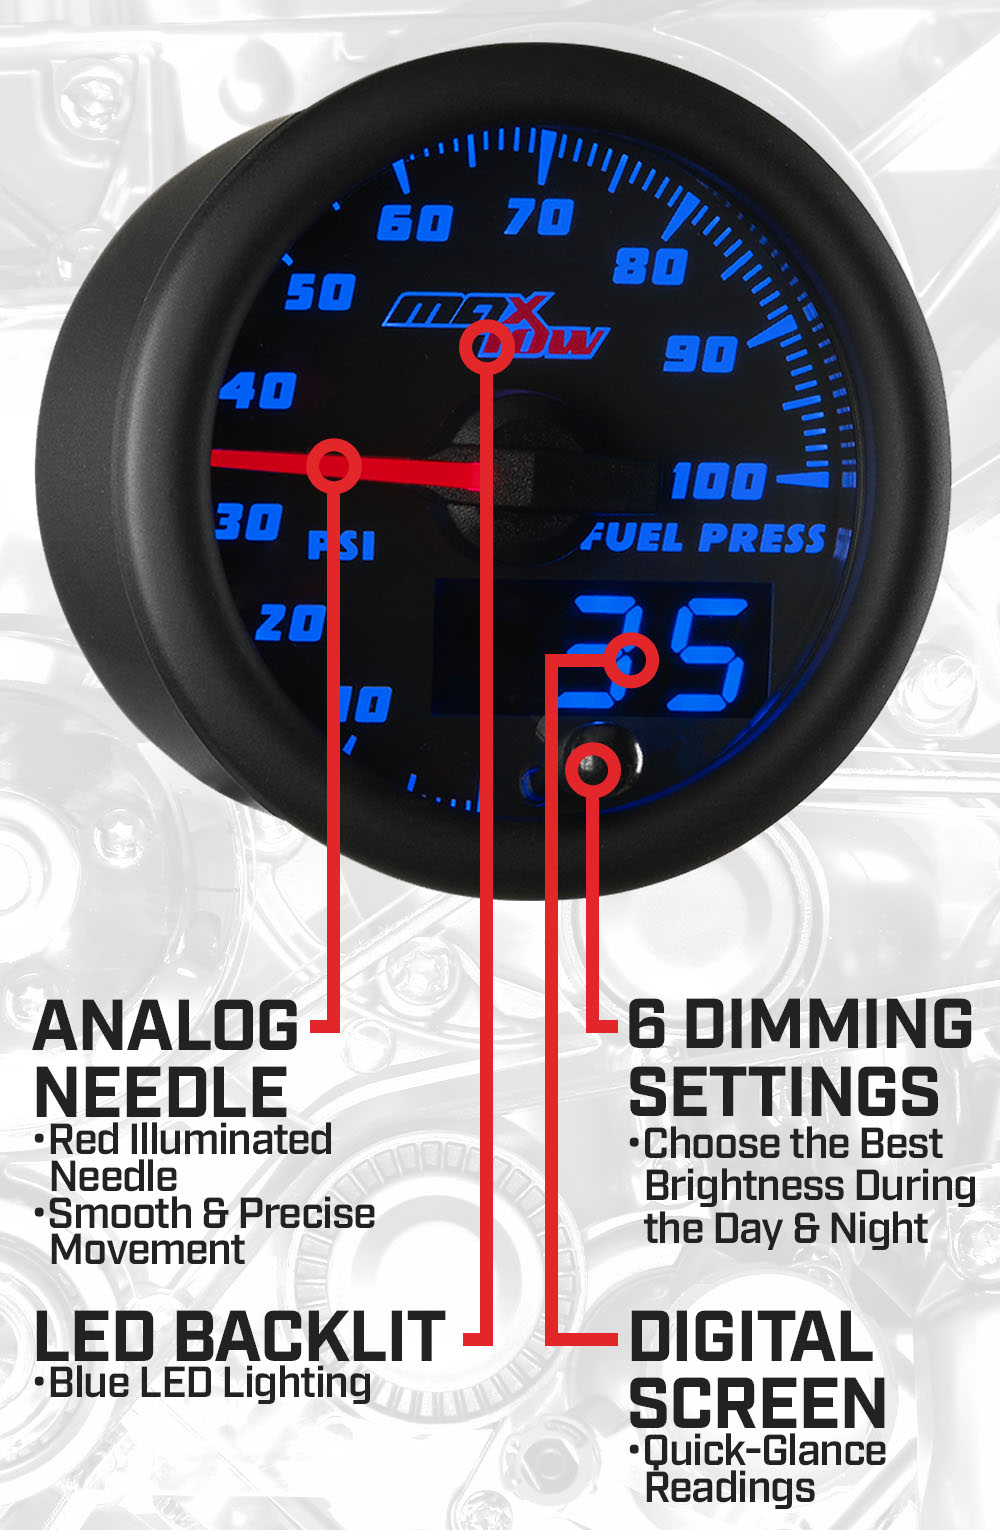 Black & Blue Double Vision 100 PSI Fuel Pressure Gauge Features